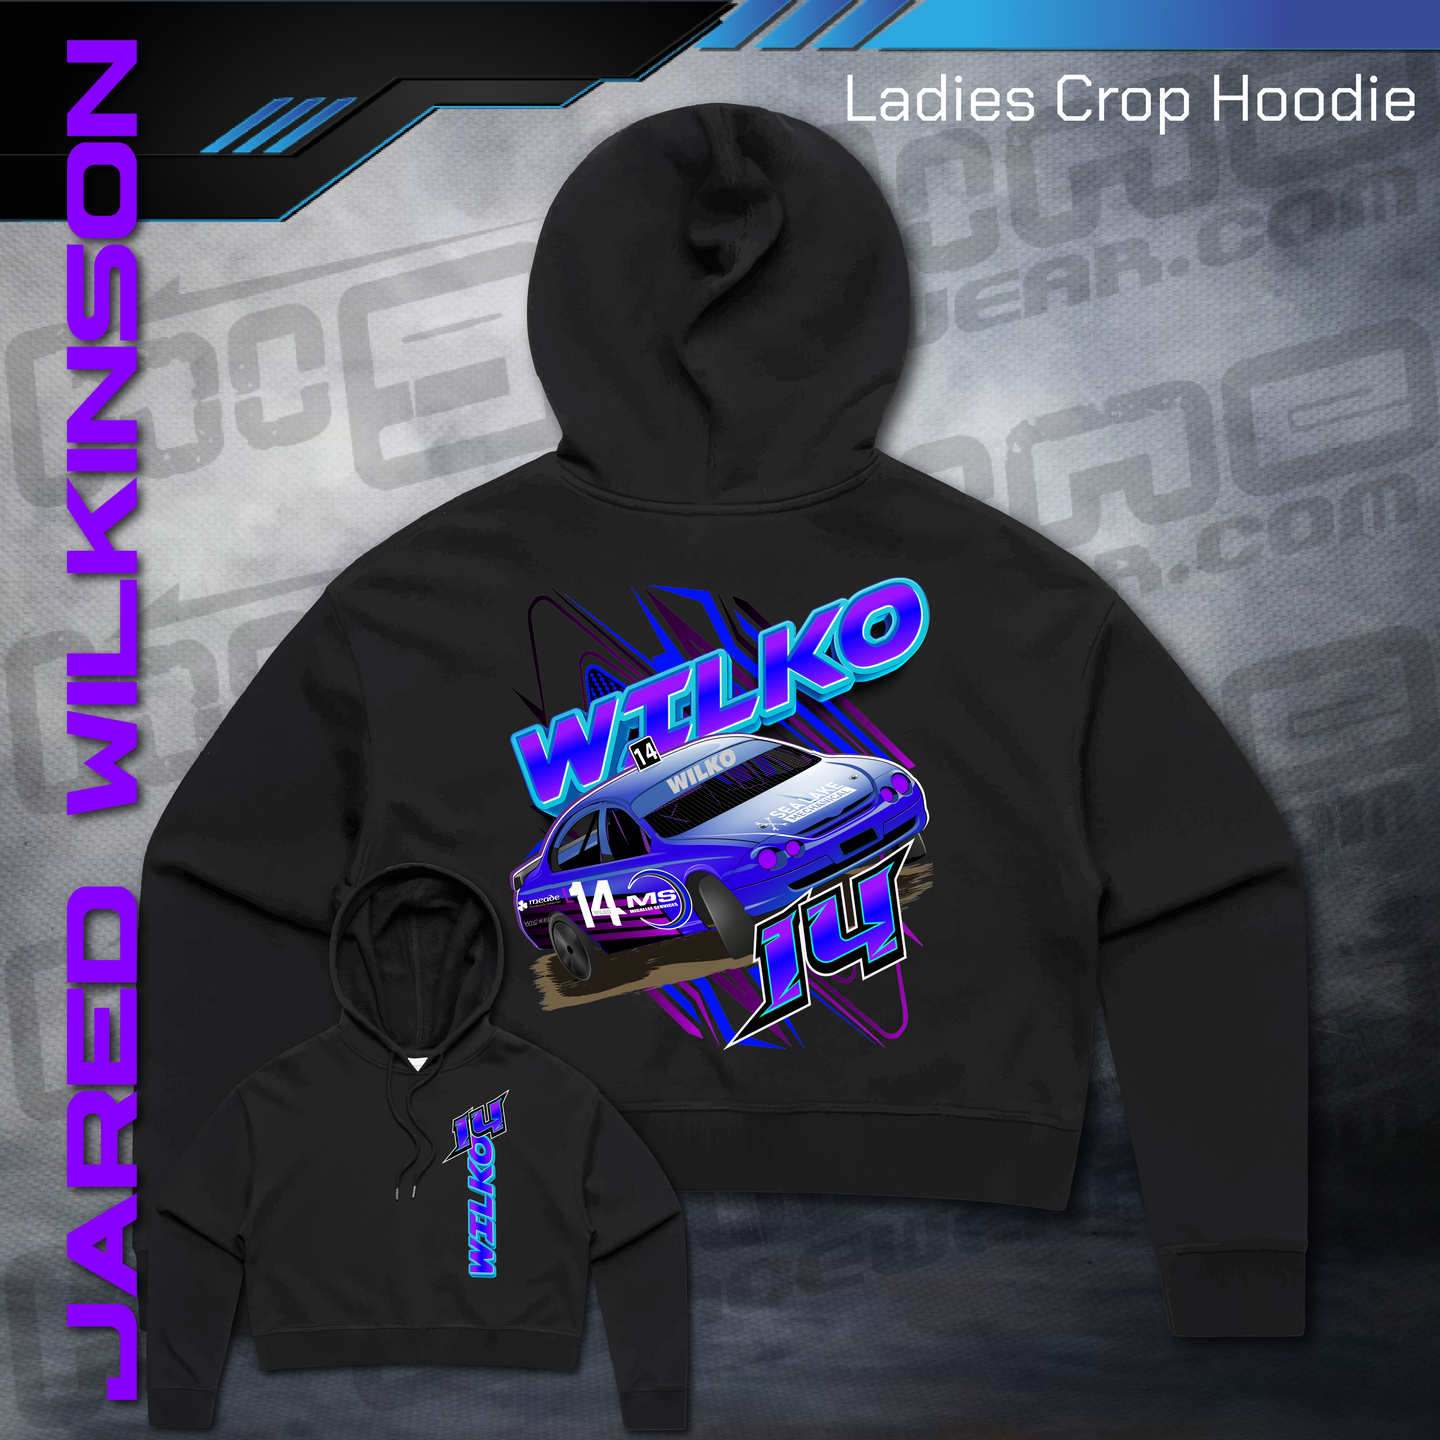 Ladies Crop Hoodie -  Jared Wilkinson